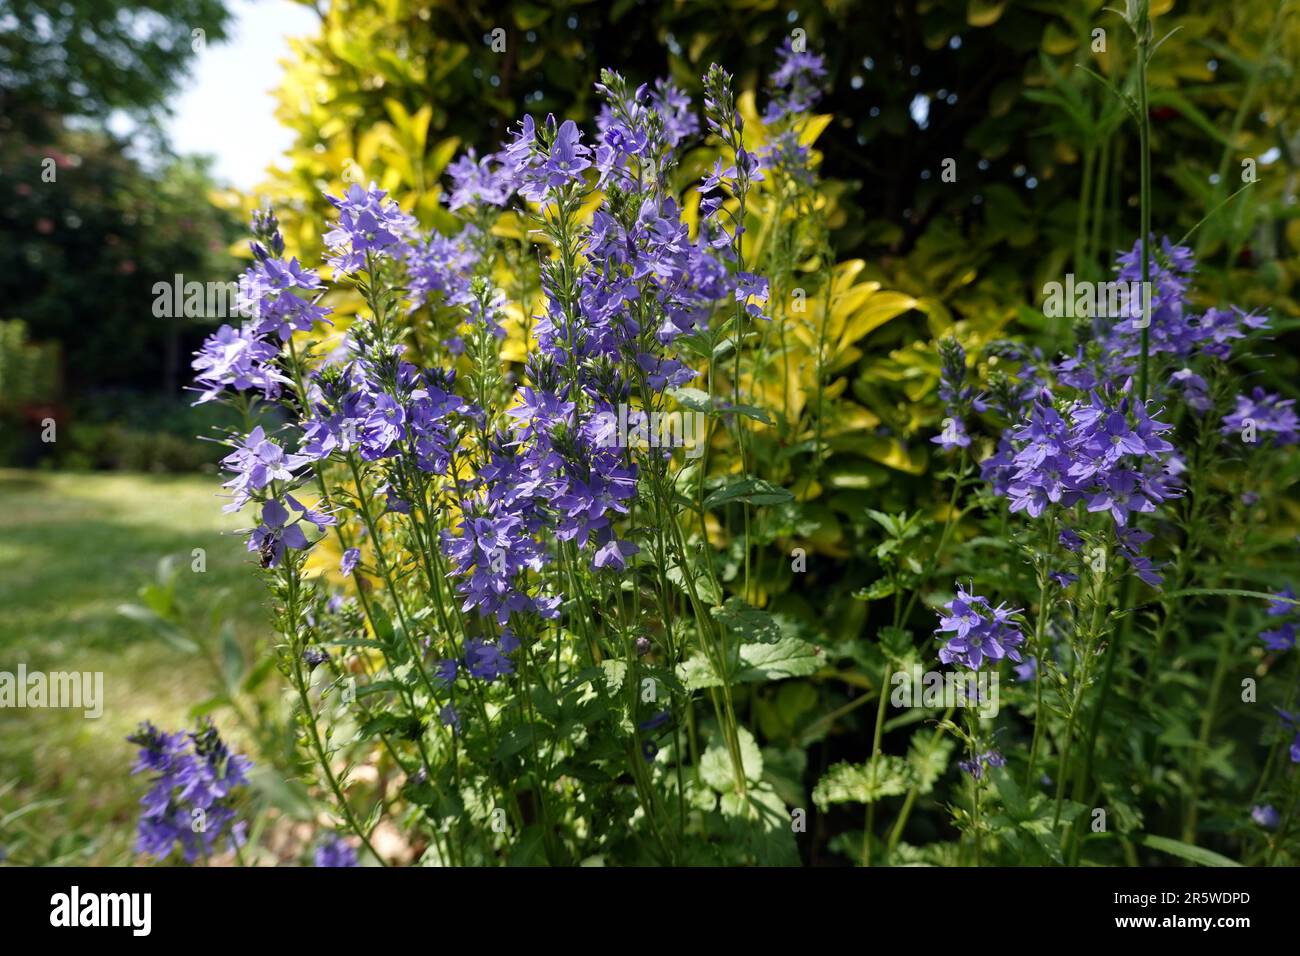 Grosser Ehrenpreis (Veronica teucrium), blühende Pflanze im Garten Stock Photo